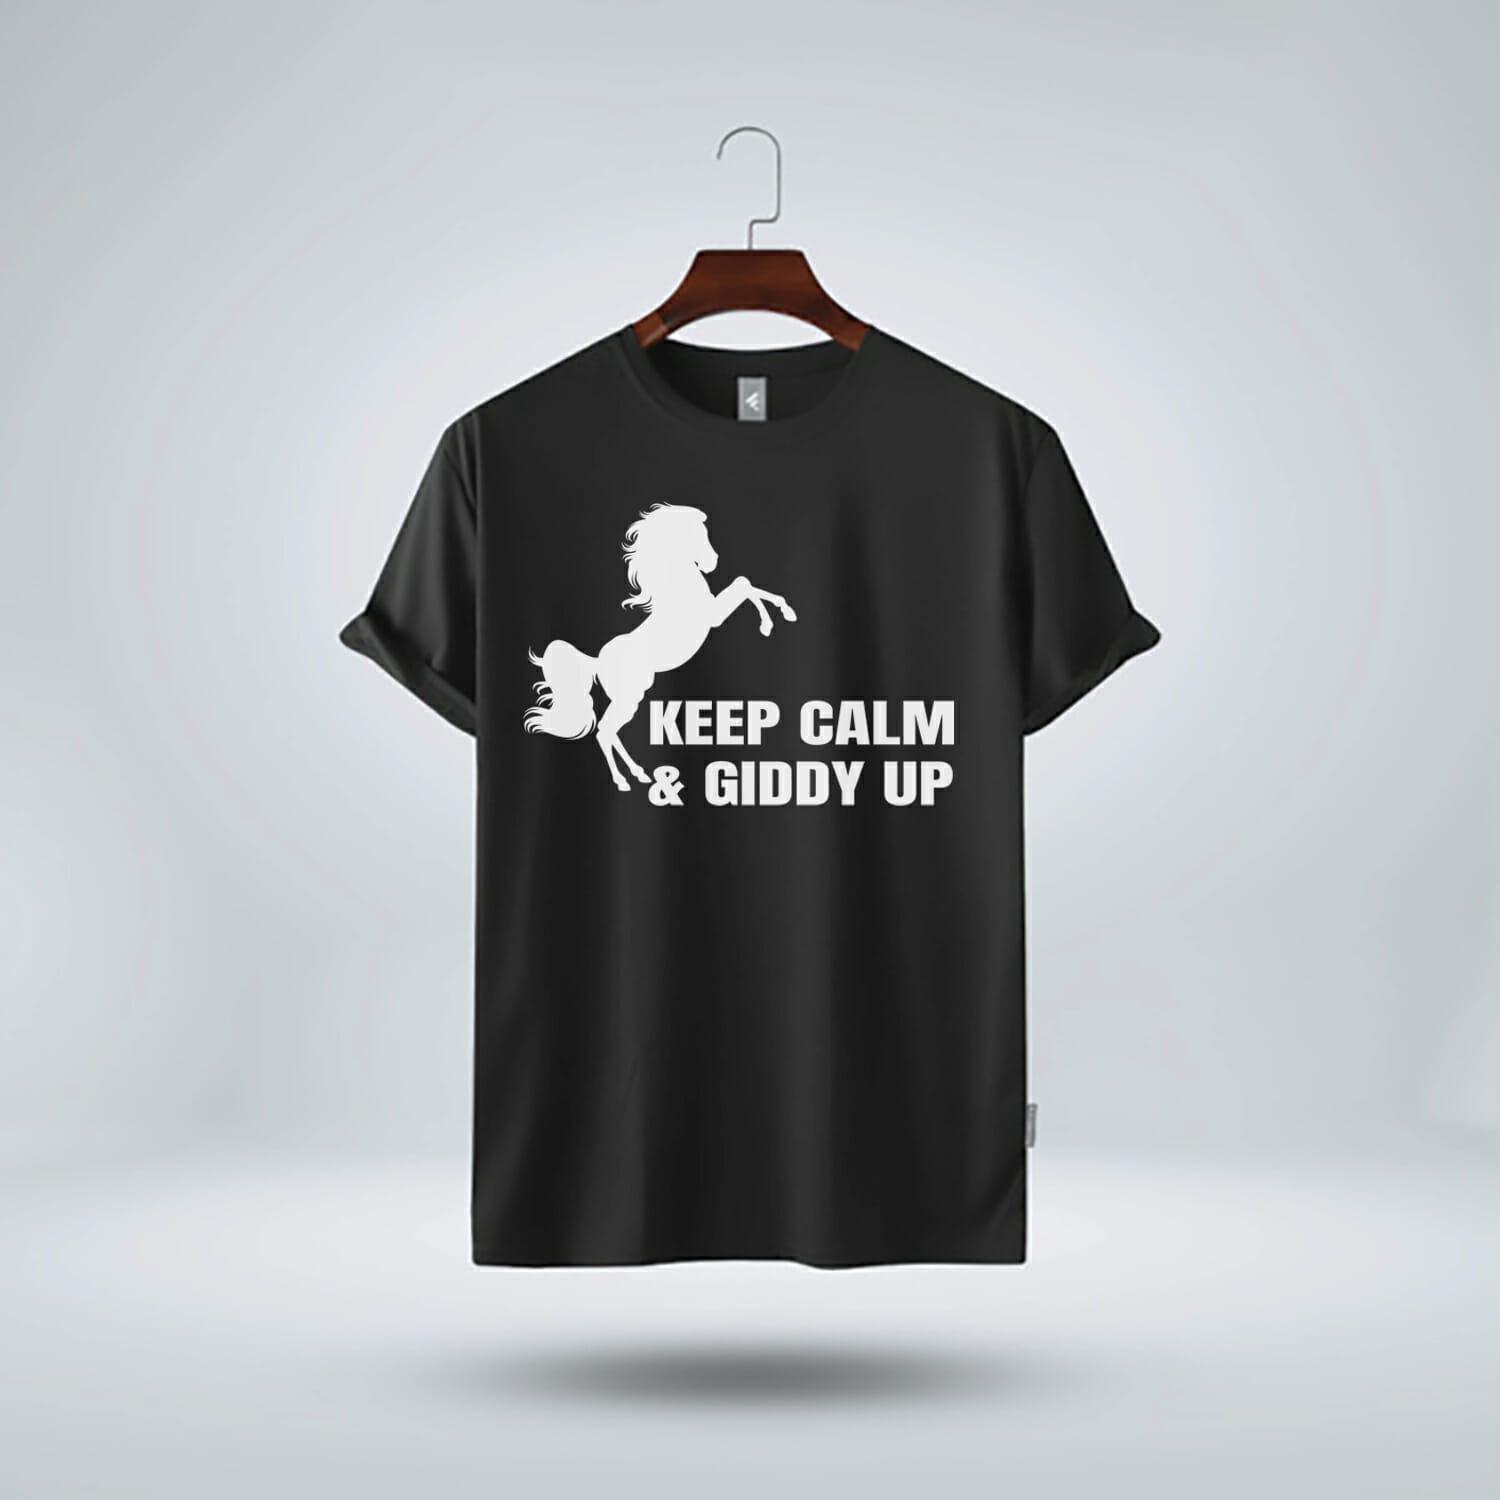 Keep Calm & Giddy Up T-Shirt Design